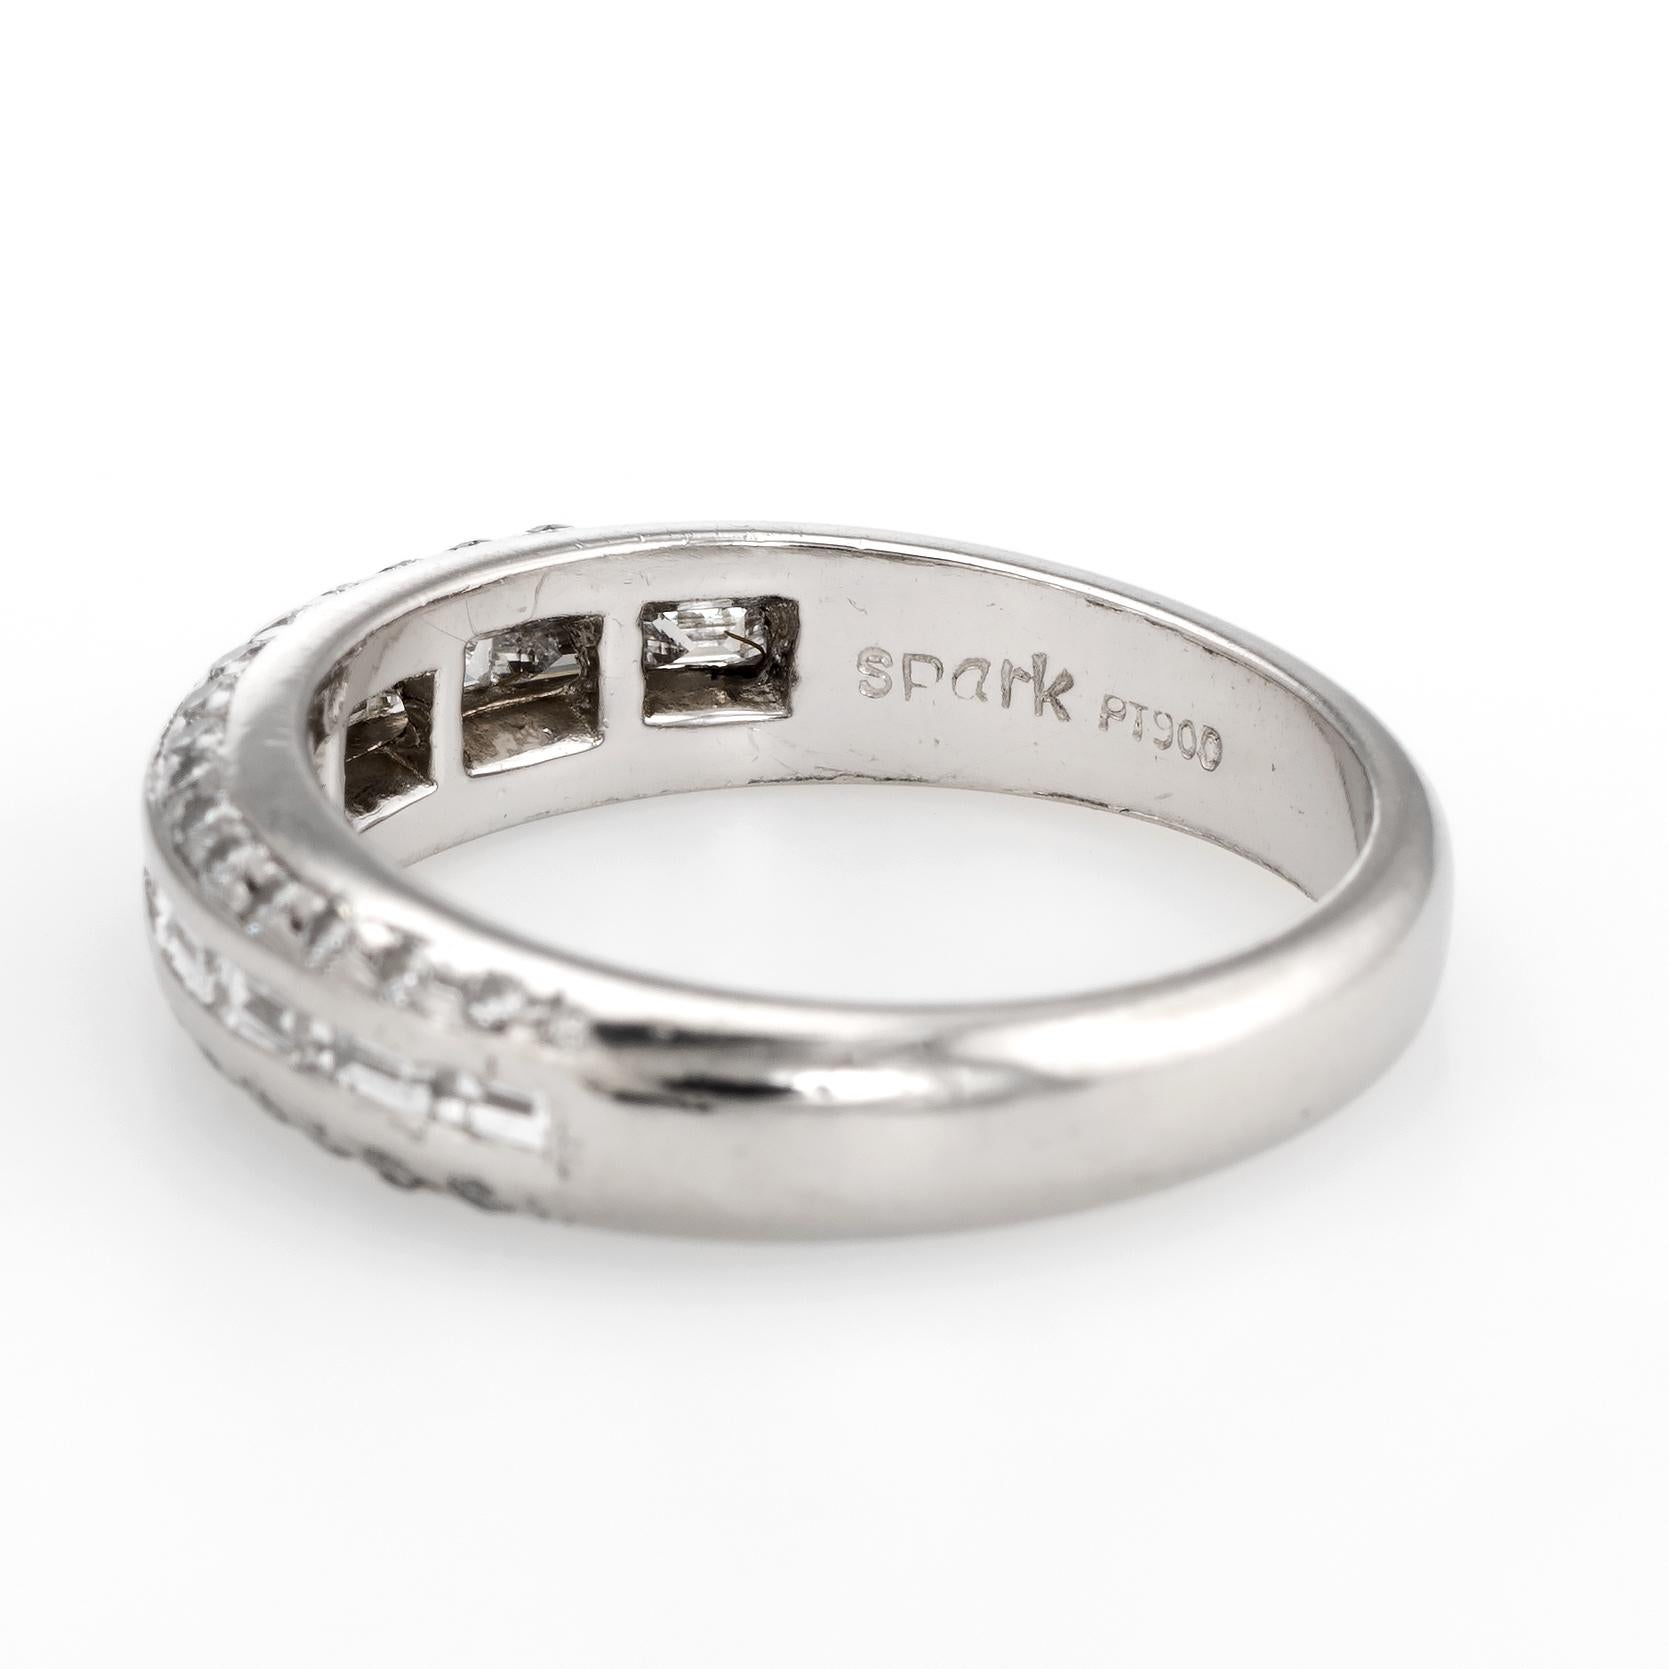 Estate Mixed Cut Diamond Band Platinum 0.59 Carat Wedding Stacking Ring 2